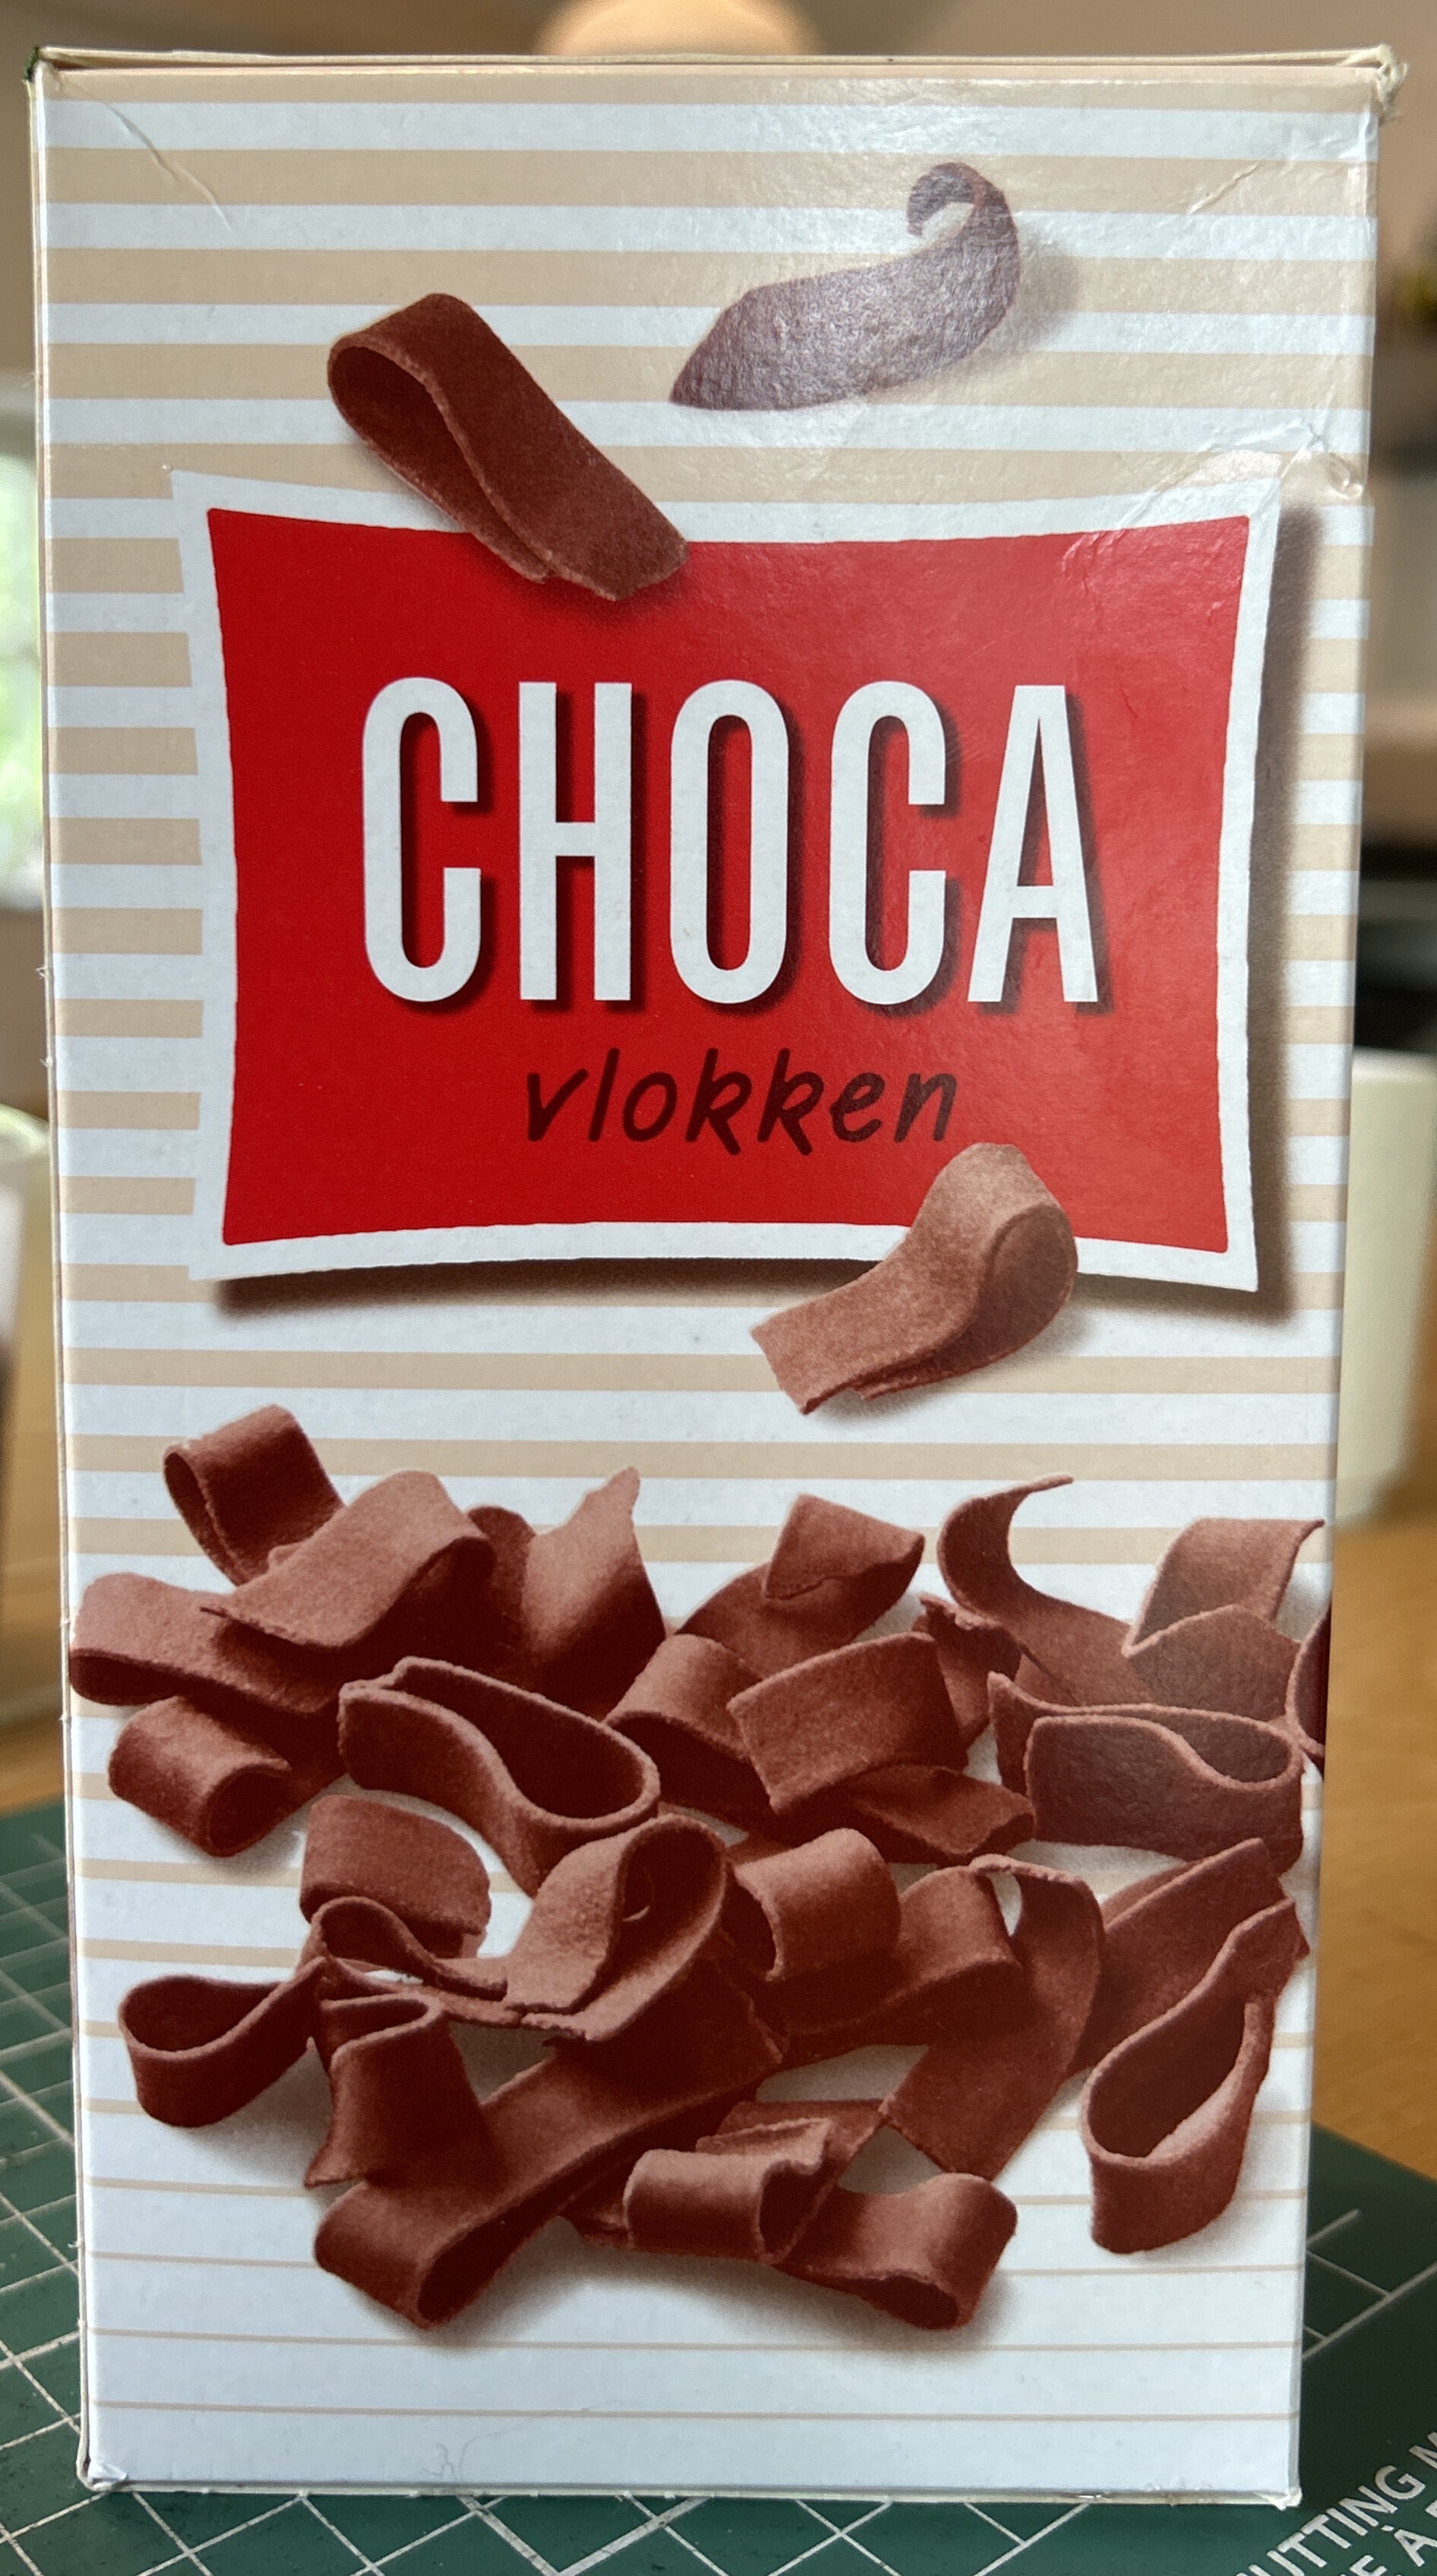 Chocavlokken - Product - nl